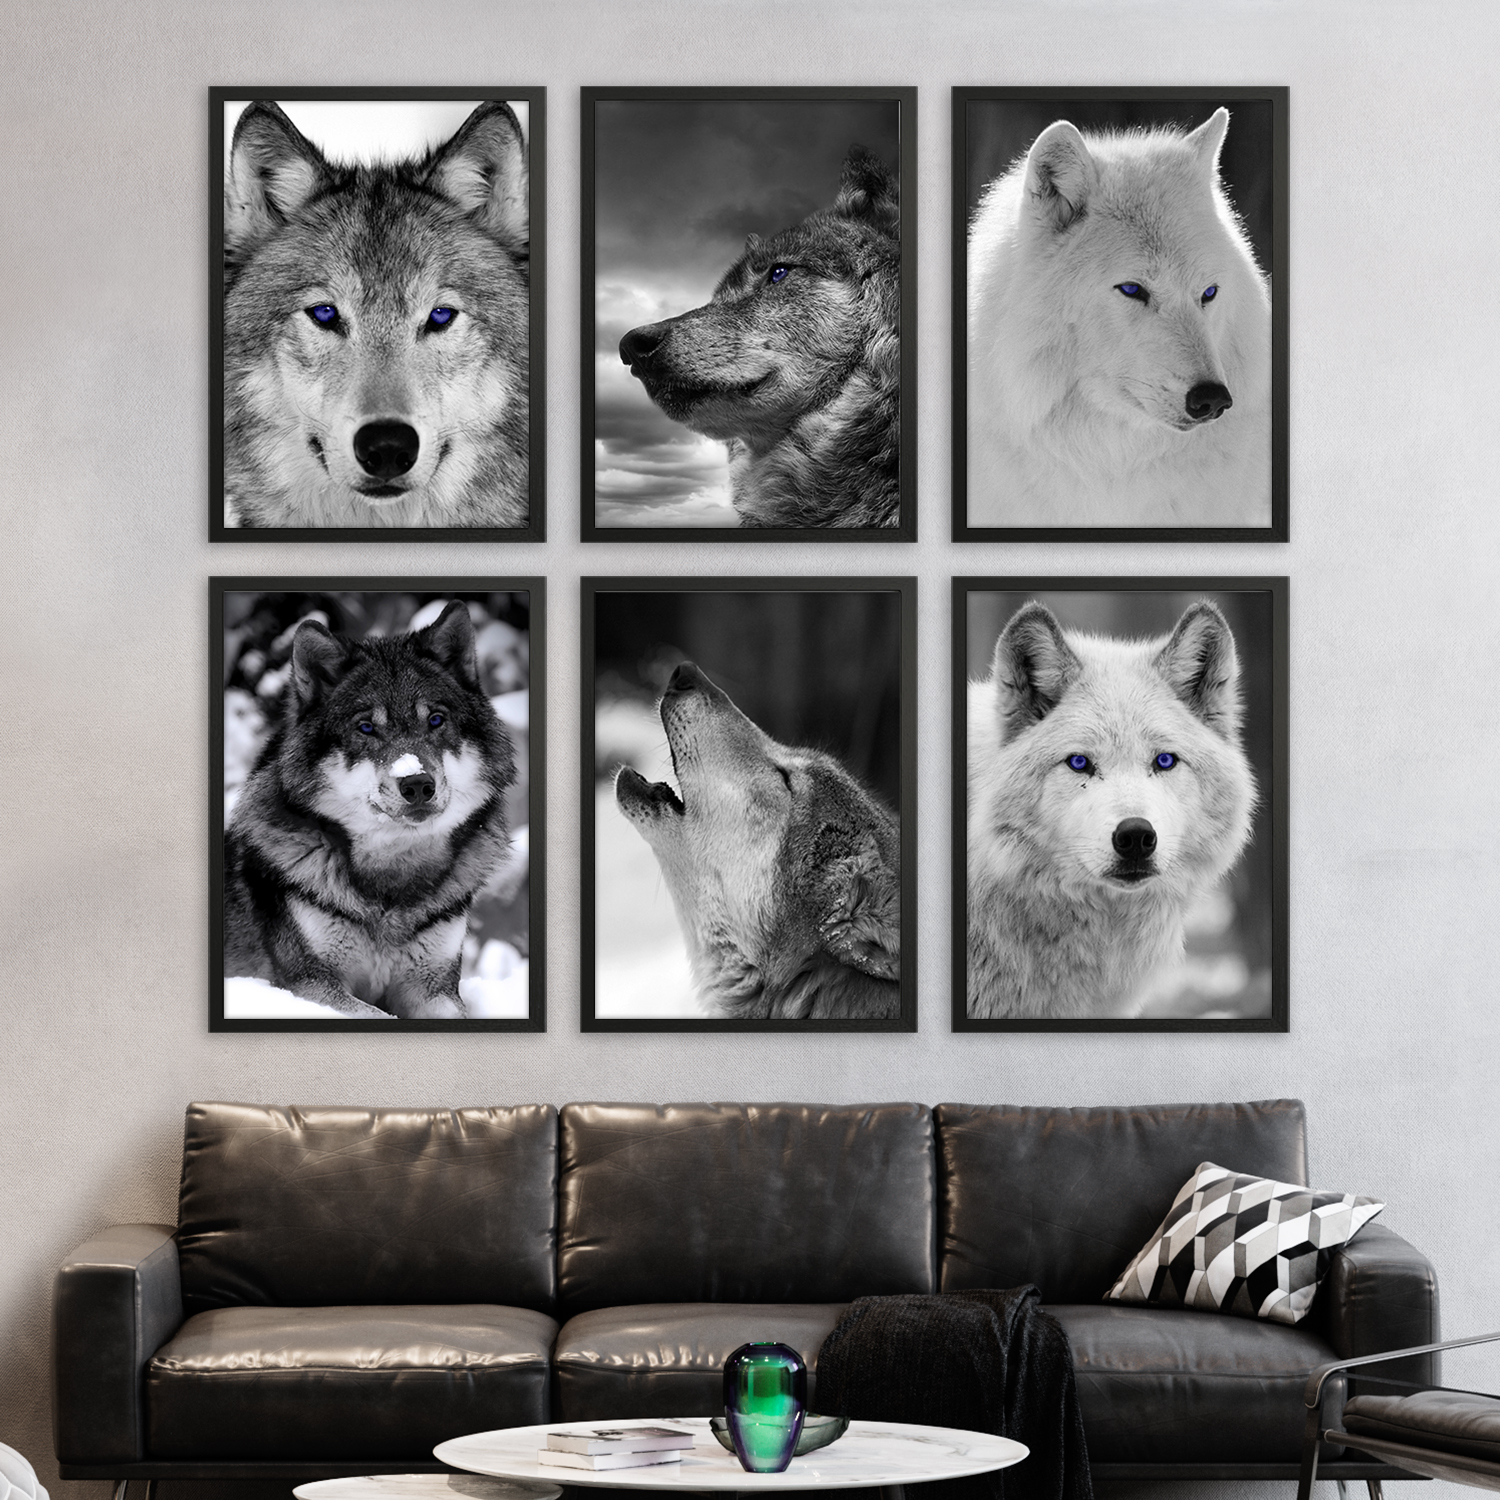 Постер с волком. Постеры с животными для интерьера. Постер волки. Плакат с волком. Плак волк.